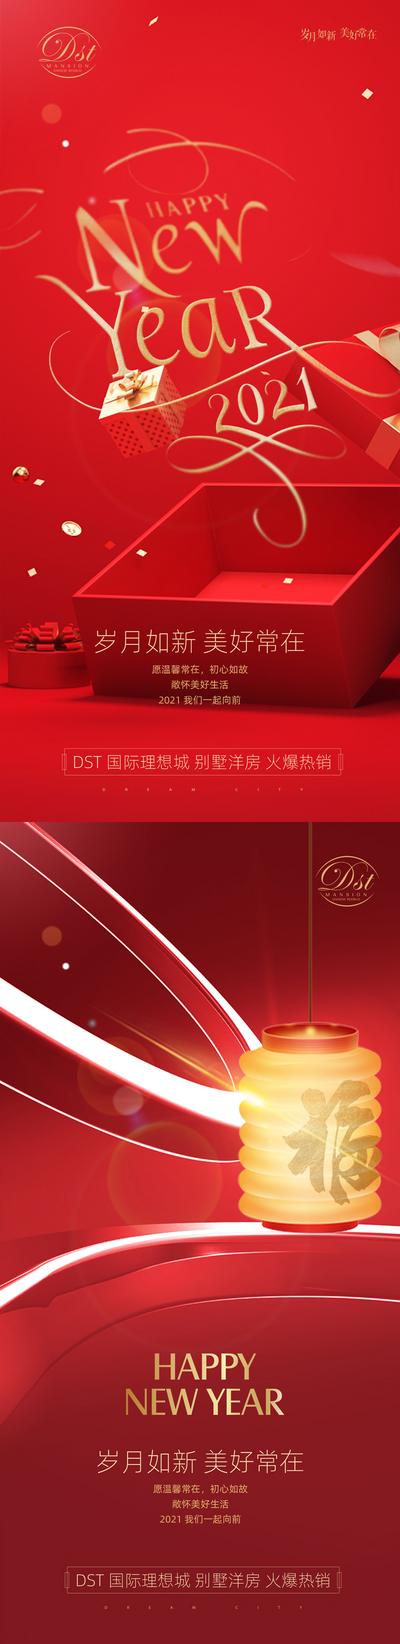 南门网 海报 房地产 中国传统节日 元旦 新年 红金 系列